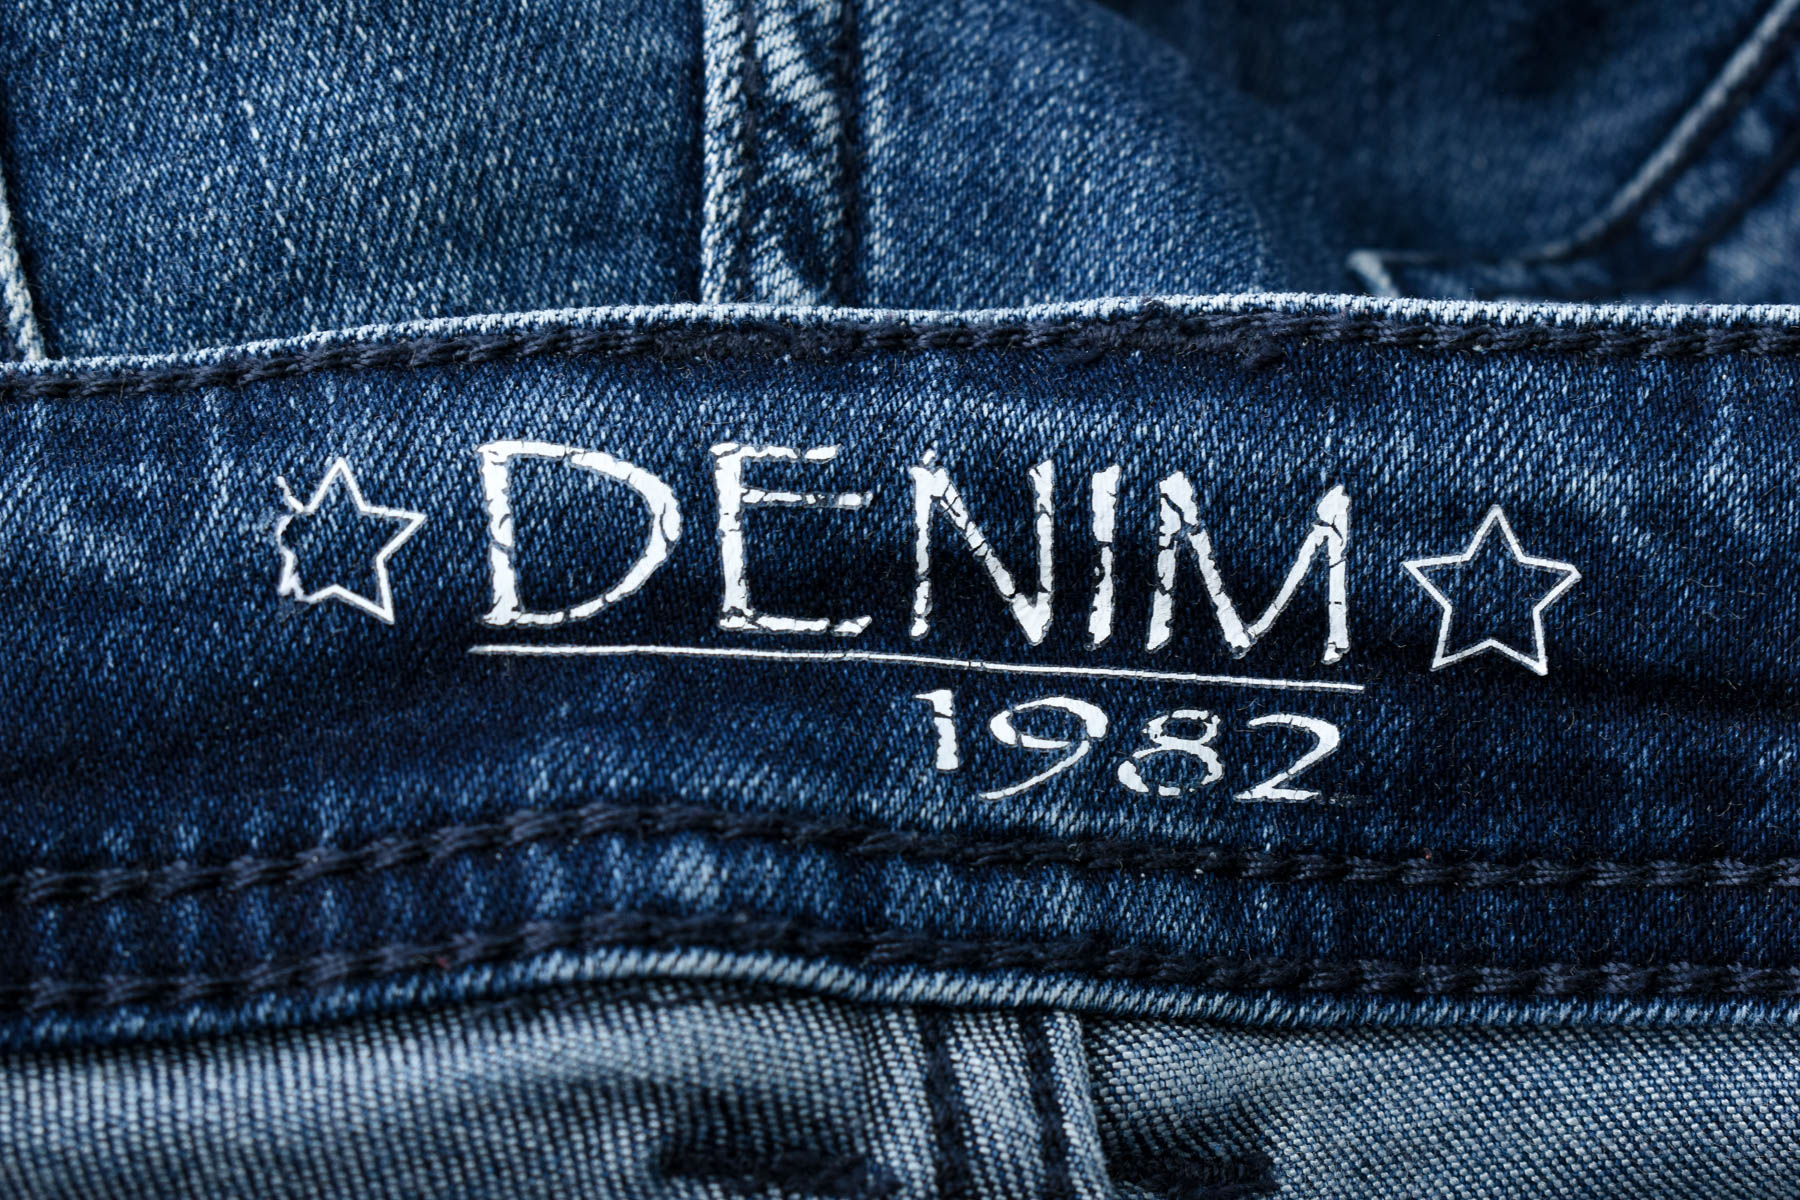 Women's jeans - Denim 1982 - 2